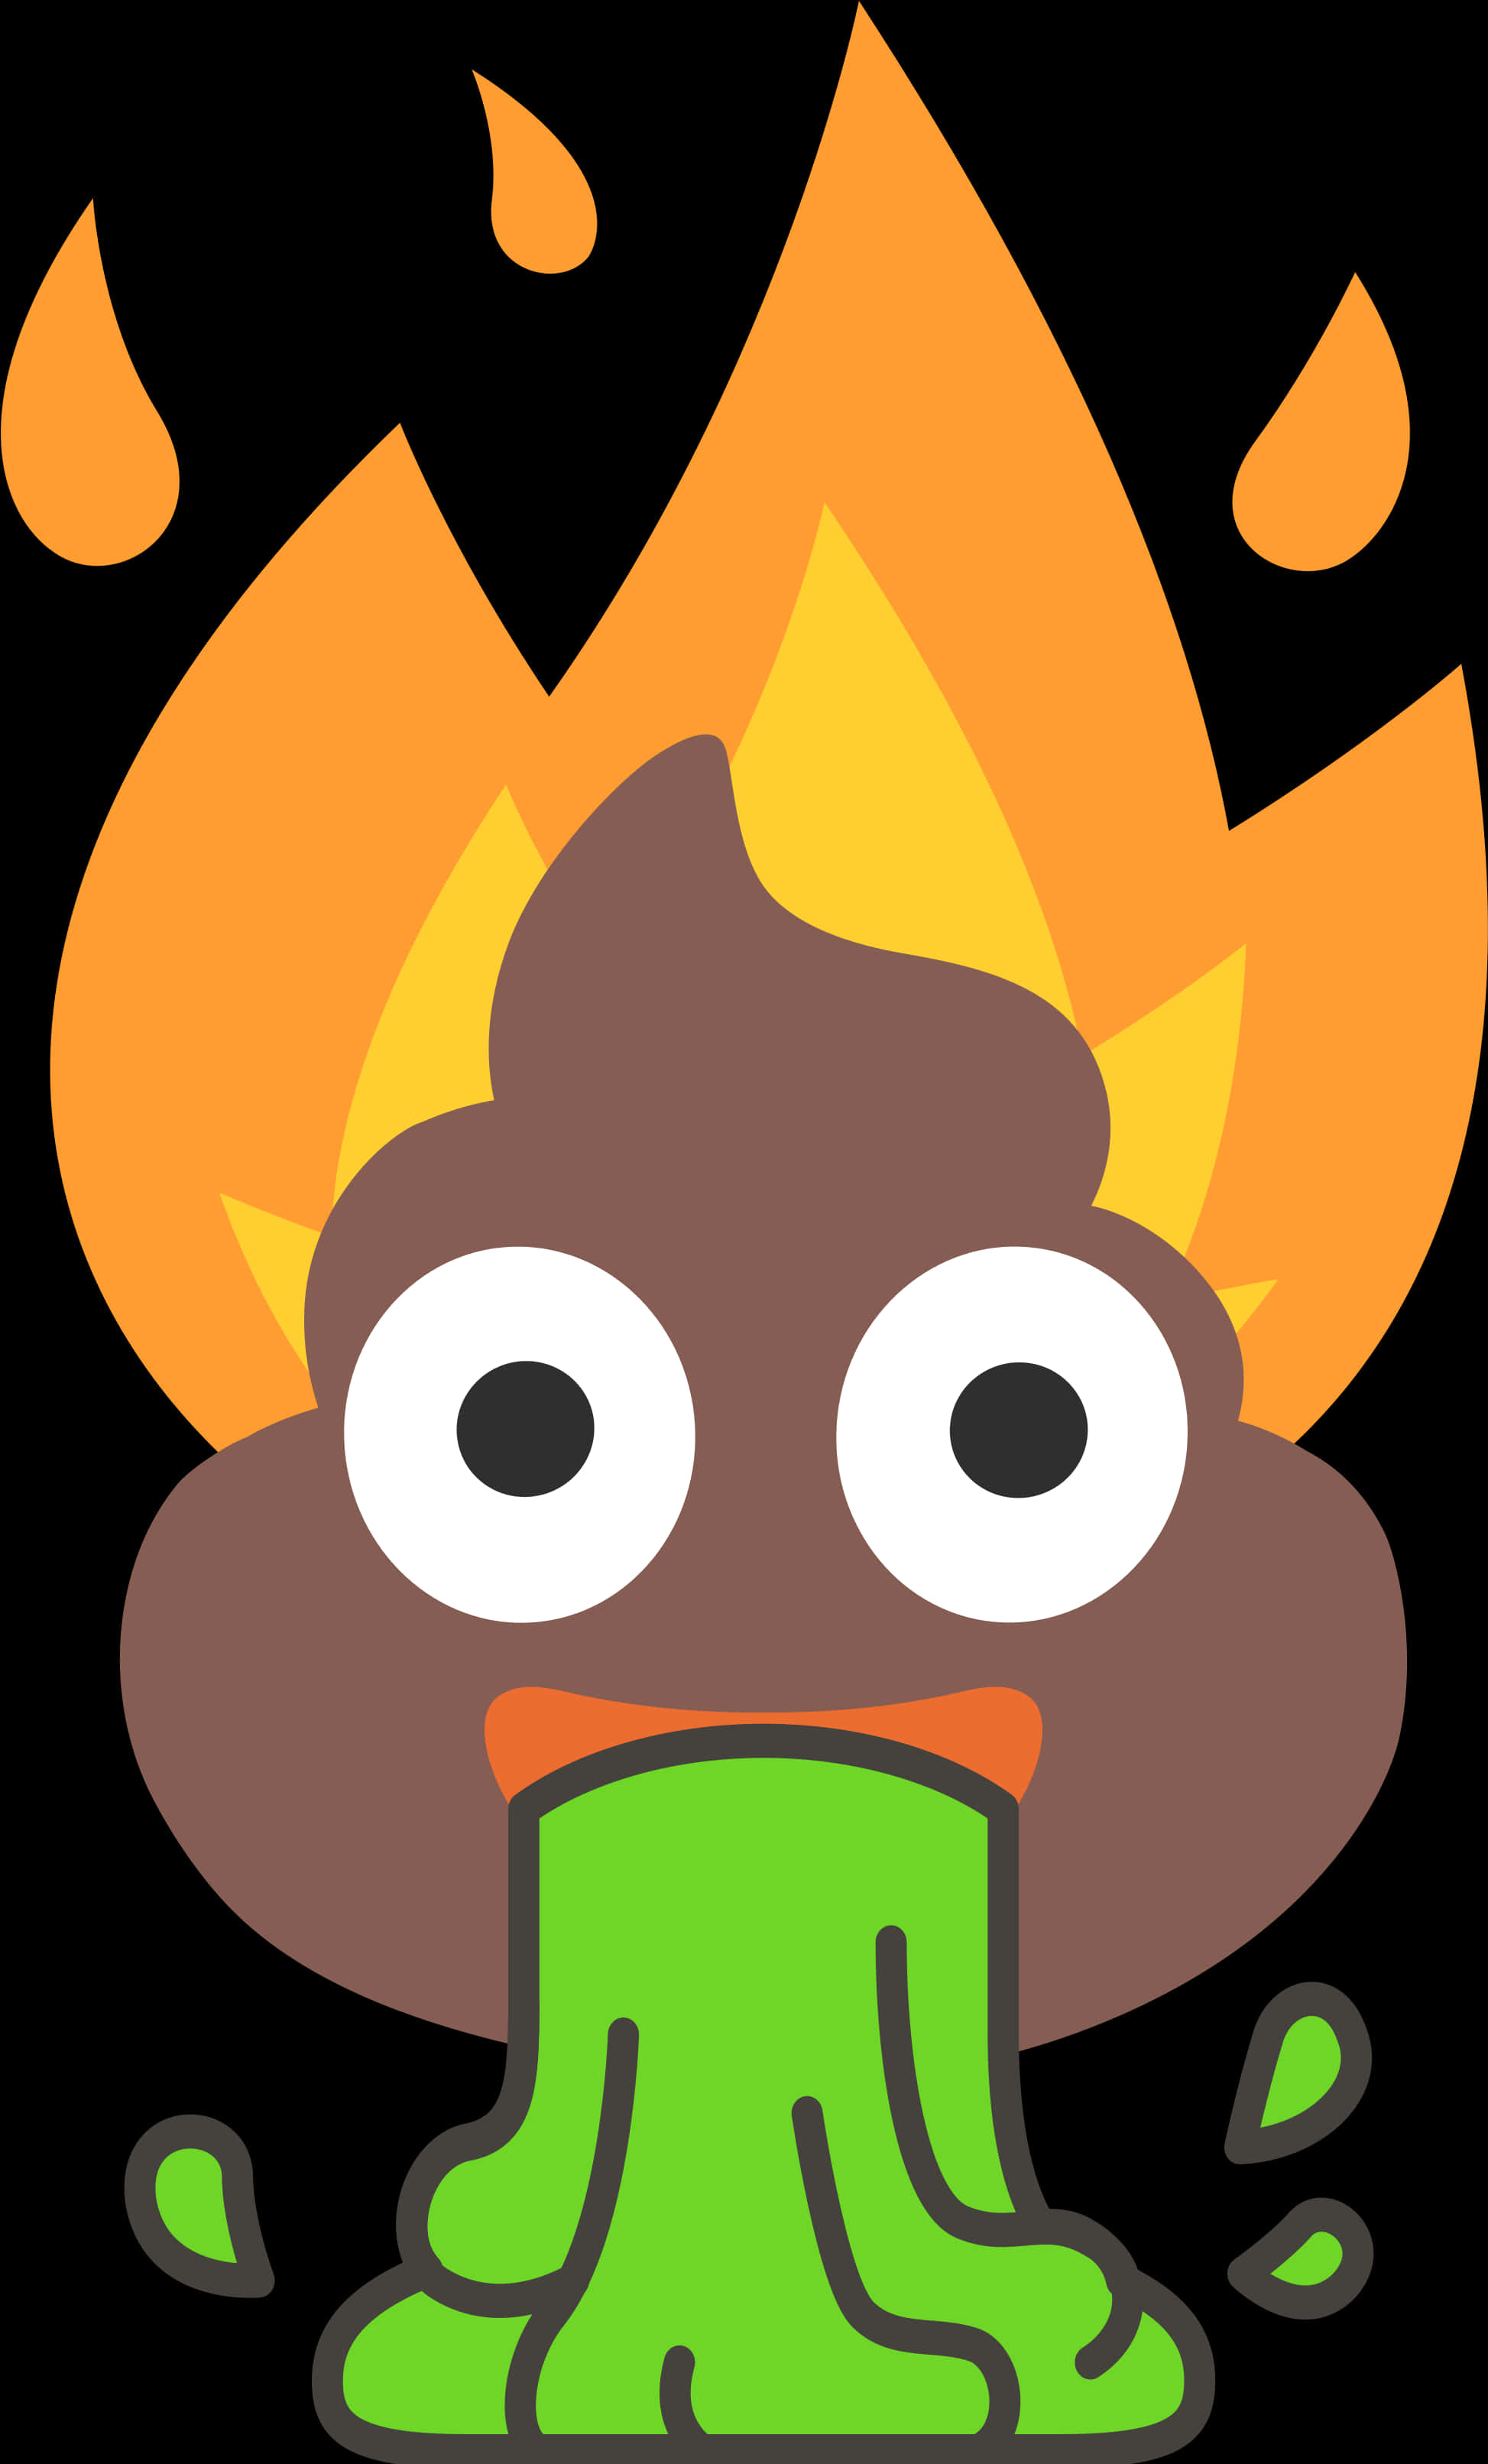 Flaming Poop Emoji Illustration PNG image